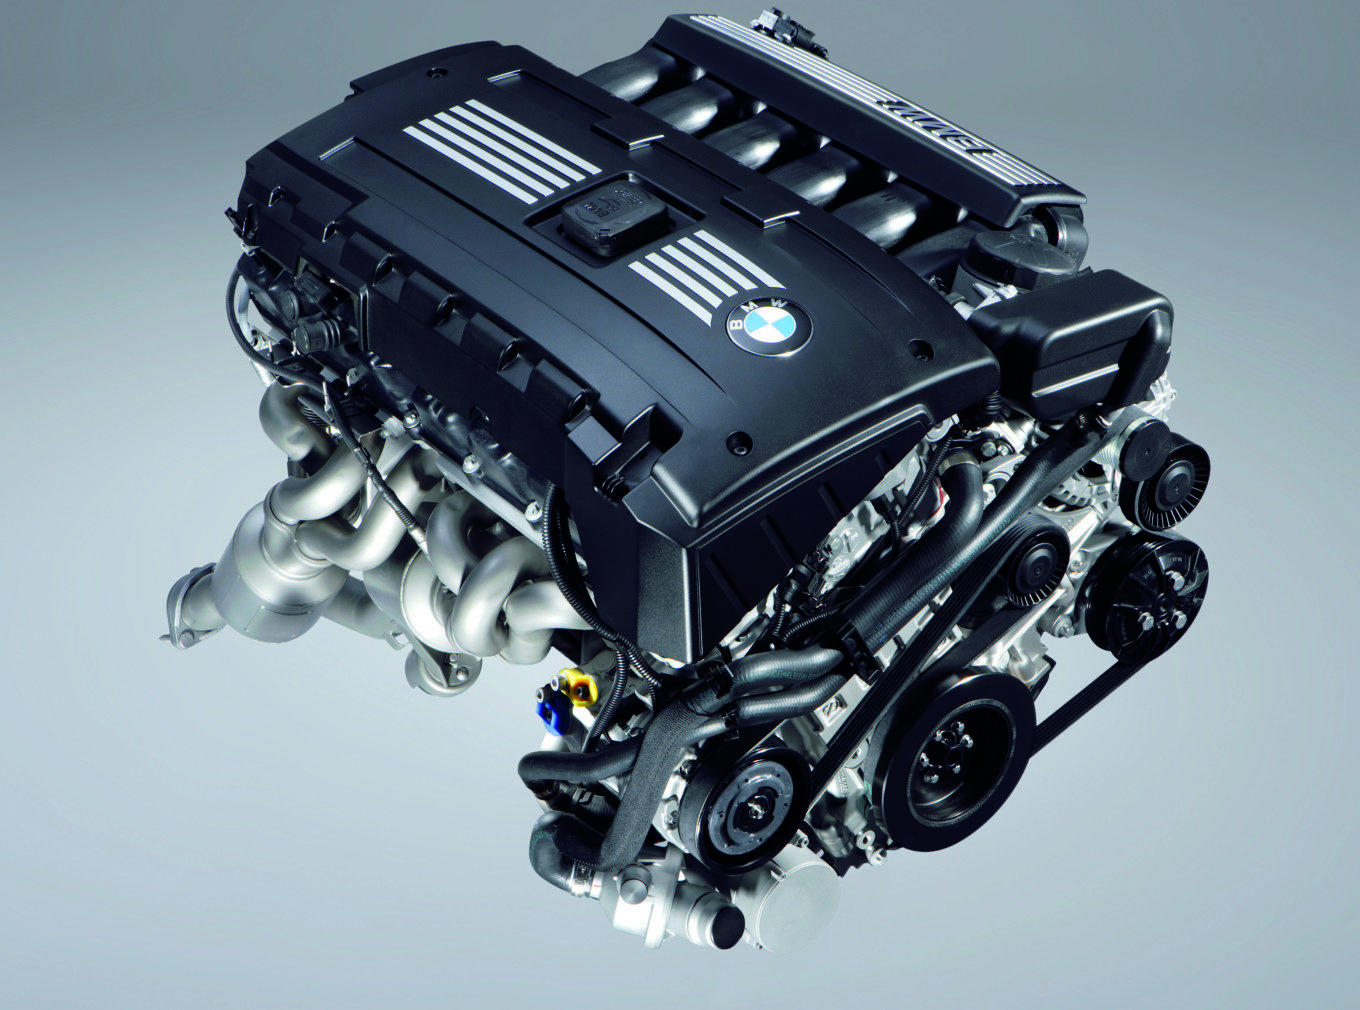 Bmw m 54. Двигатель BMW n53b30. BMW С мотором n53. N54 мотор БМВ. Двигатель n52 BMW 2.5.